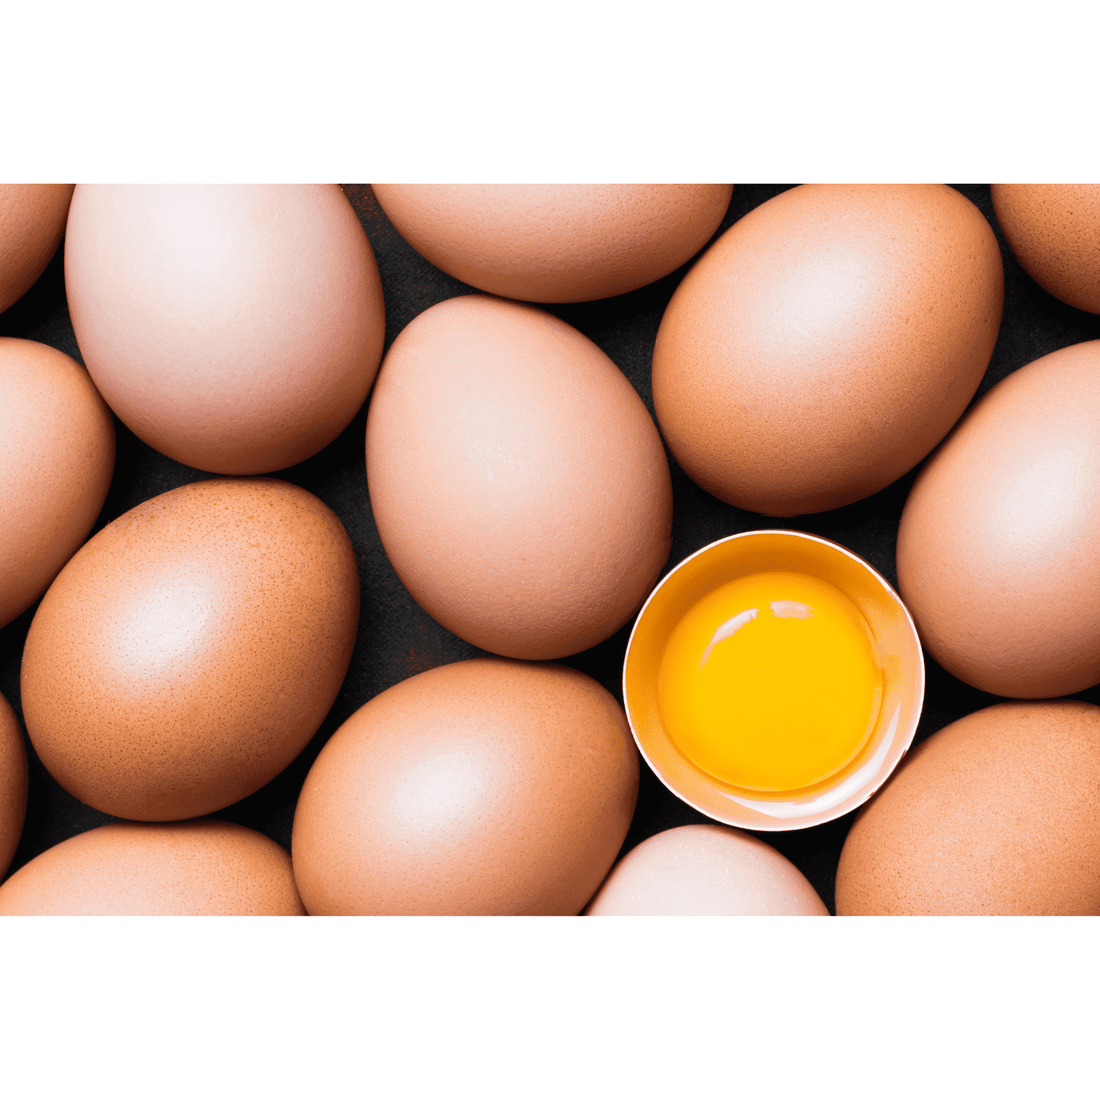 Farm Fresh Chicken Eggs - 1 Dozen - White's Family Farmhouse 